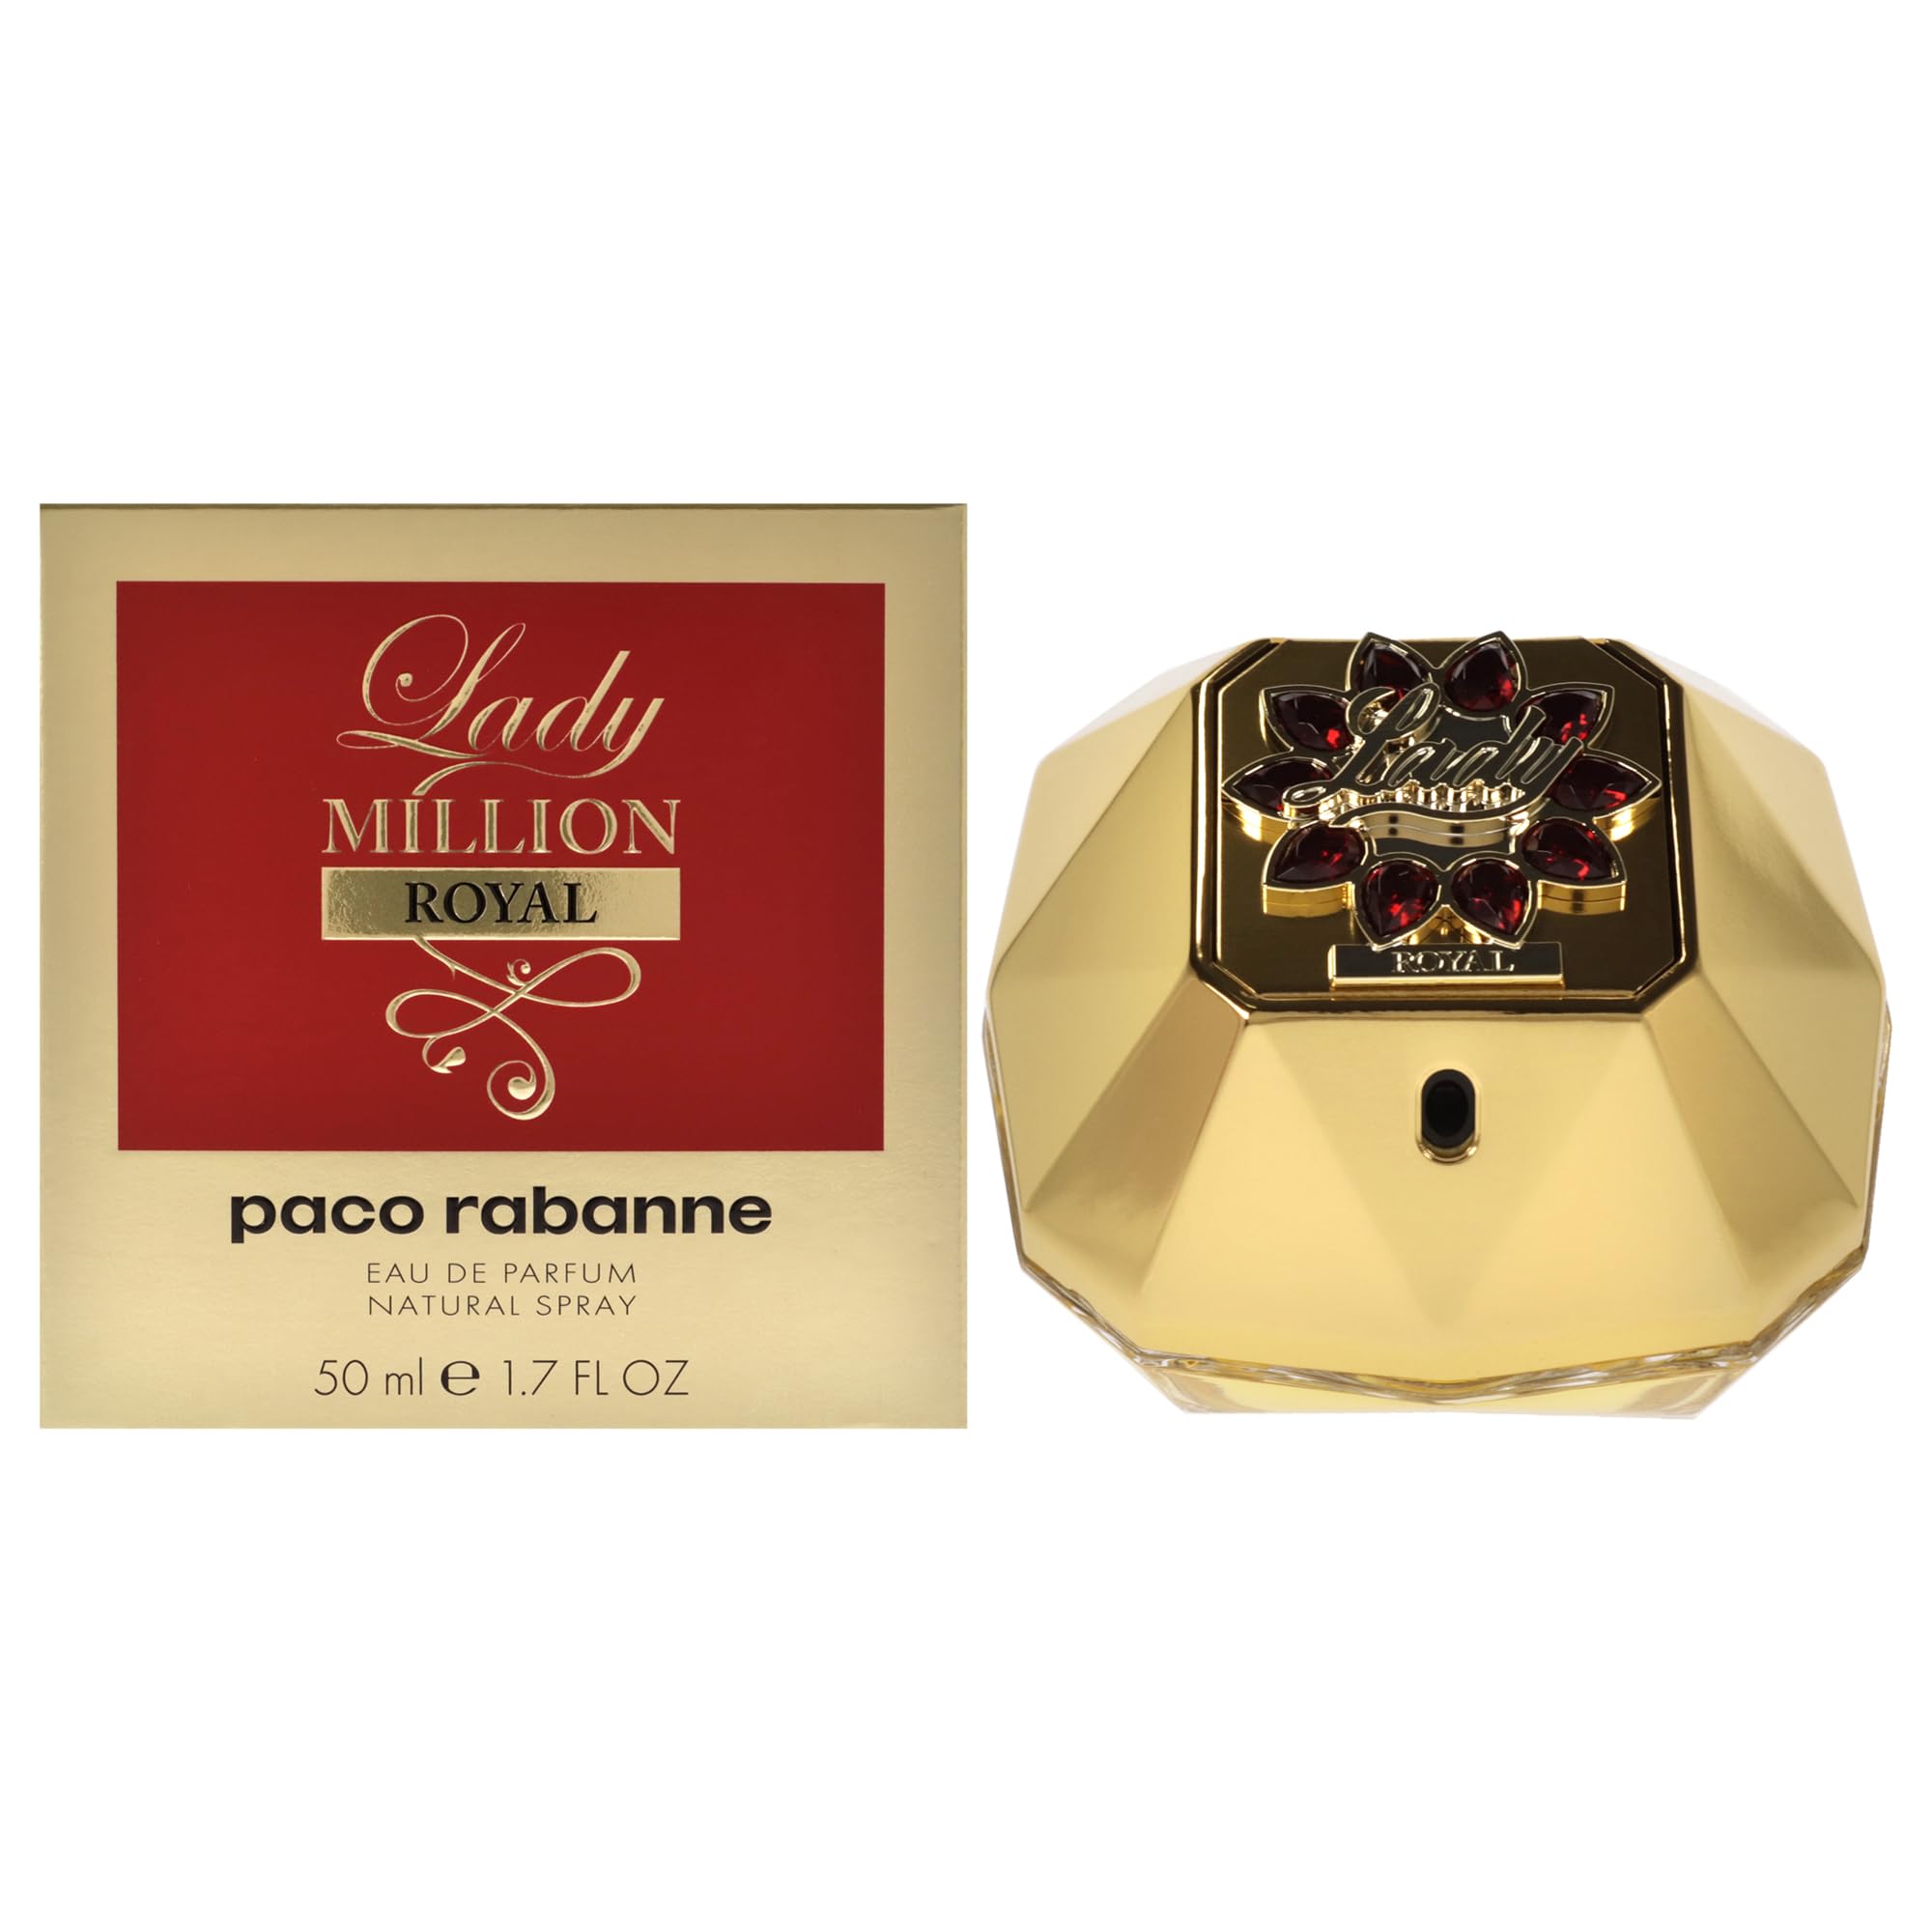 Paco Rabanne Lady Million Royal - Eau de Parfum - 50 ml